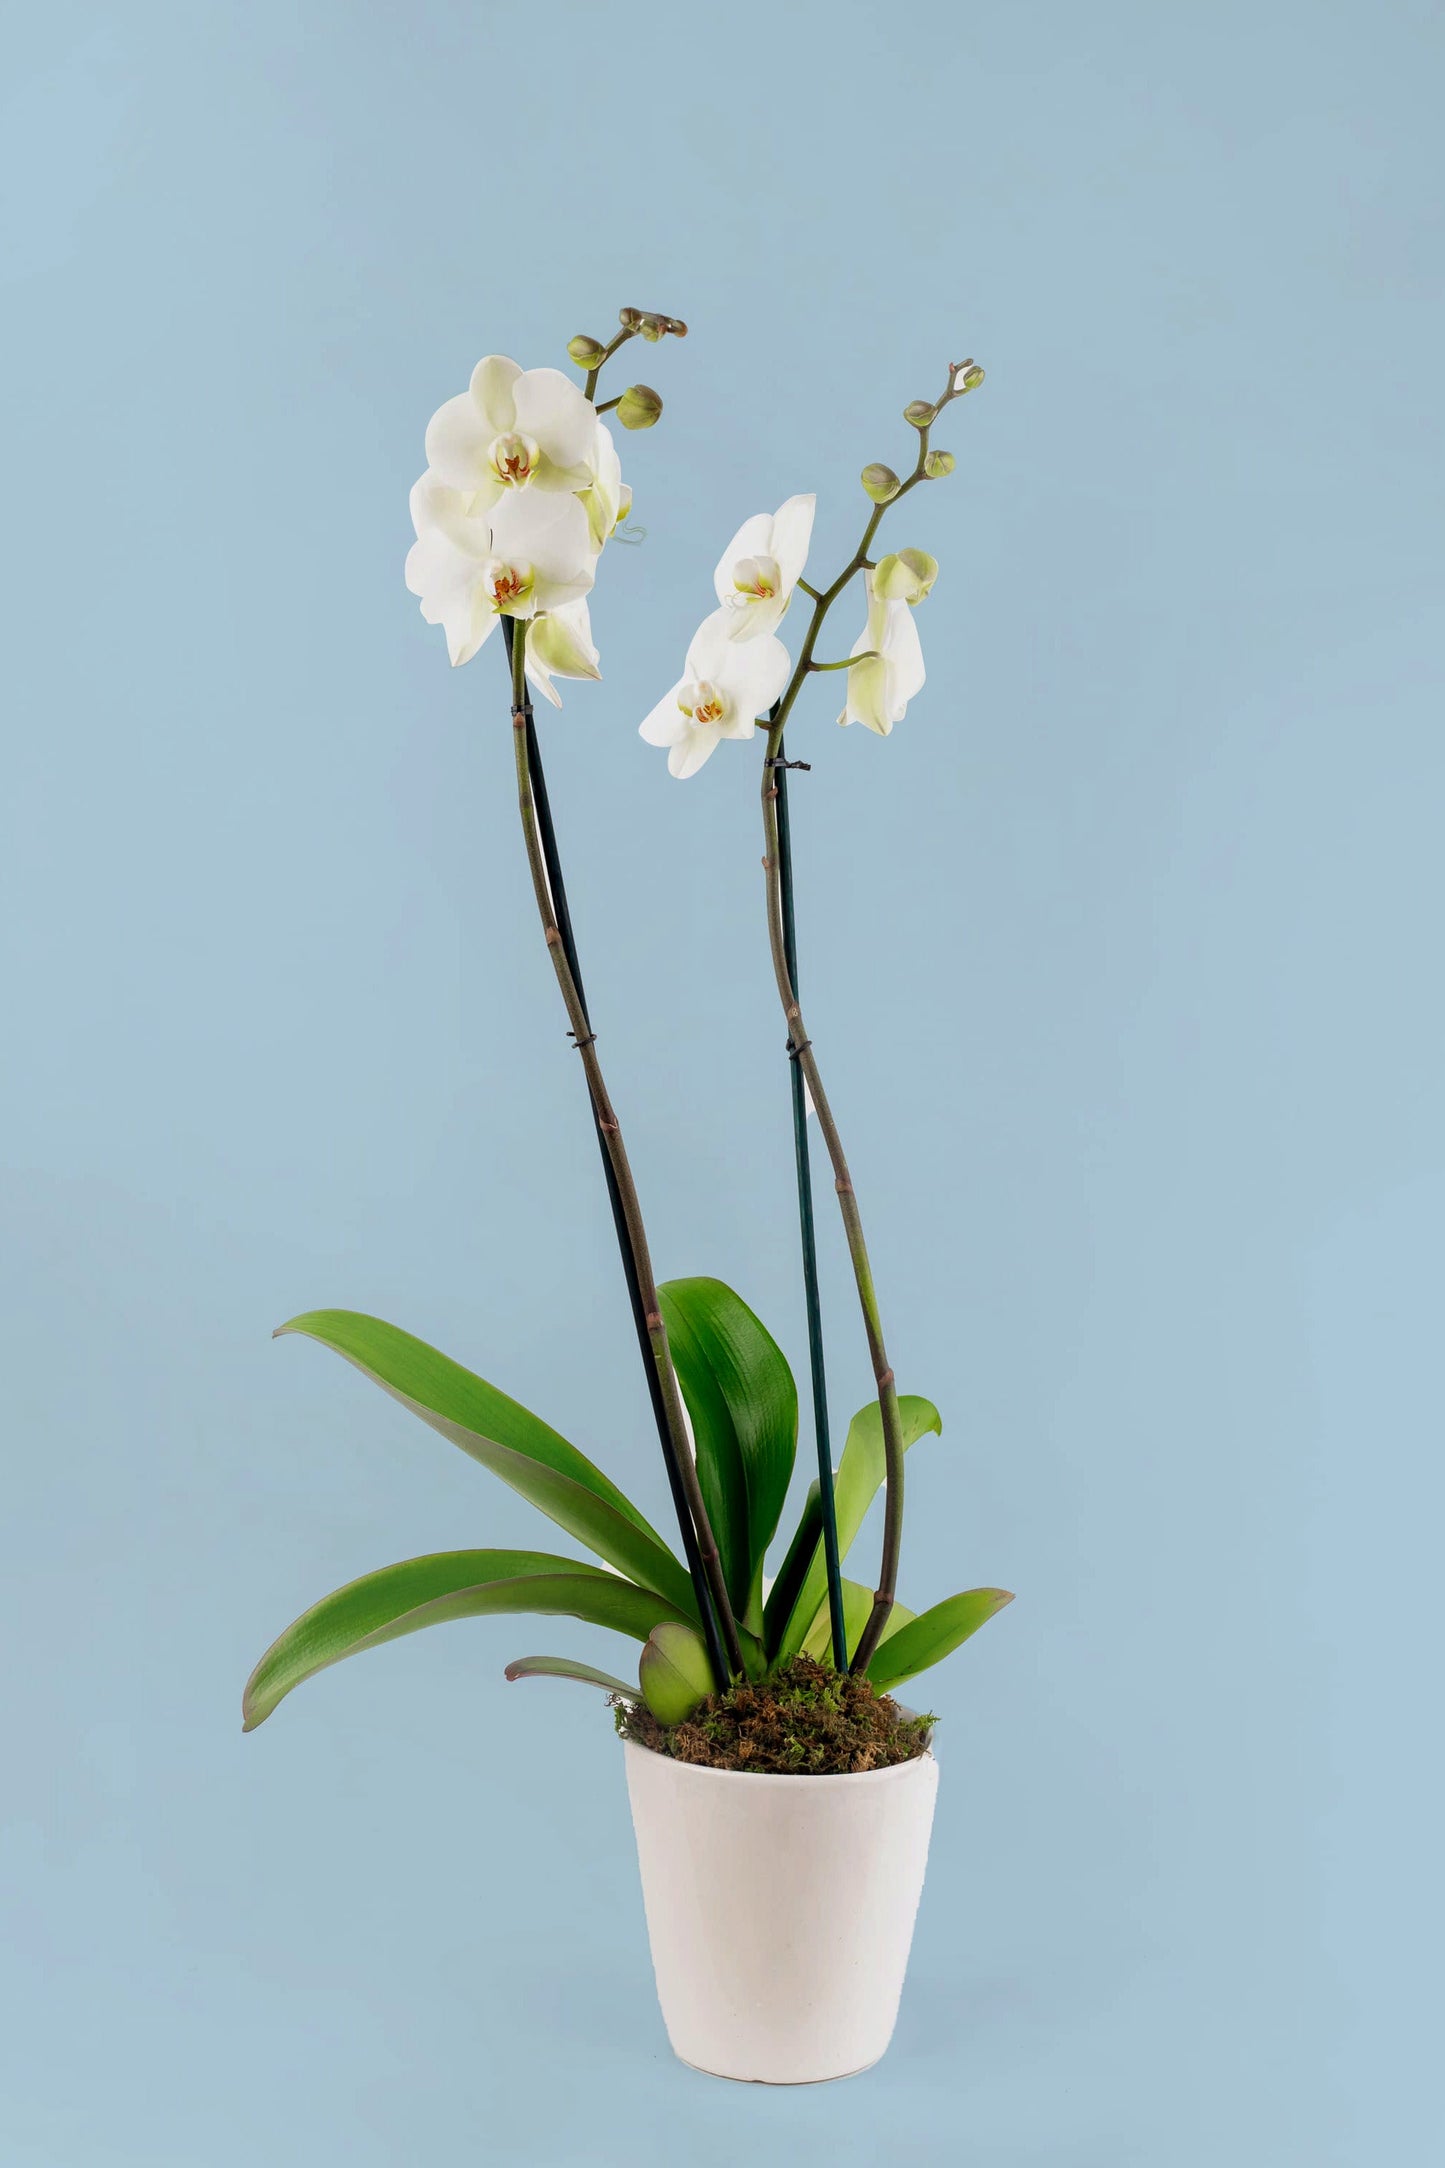 Remedios Varo Blanco Planta / Orquídea Blanca